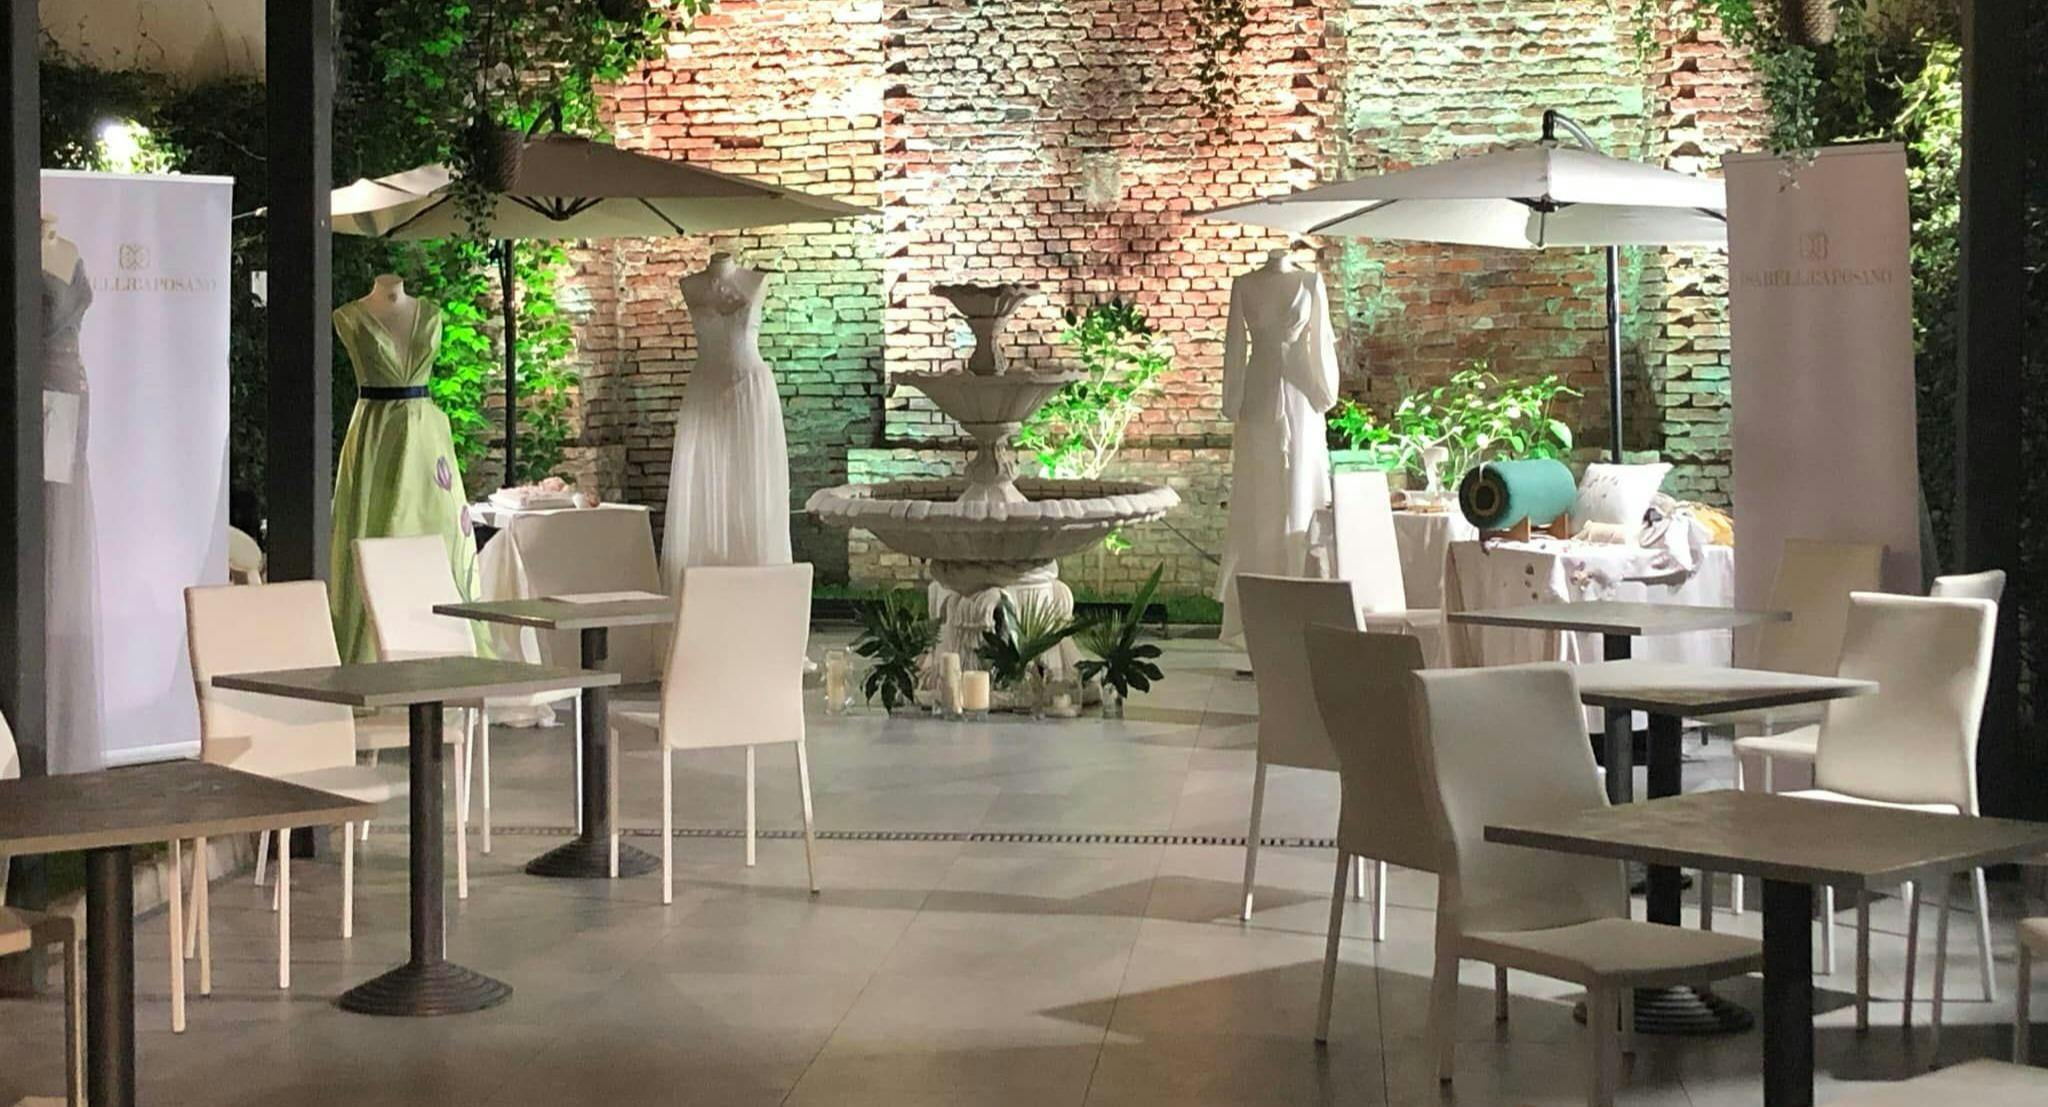 Photo of restaurant Córi in Navigli, Milan